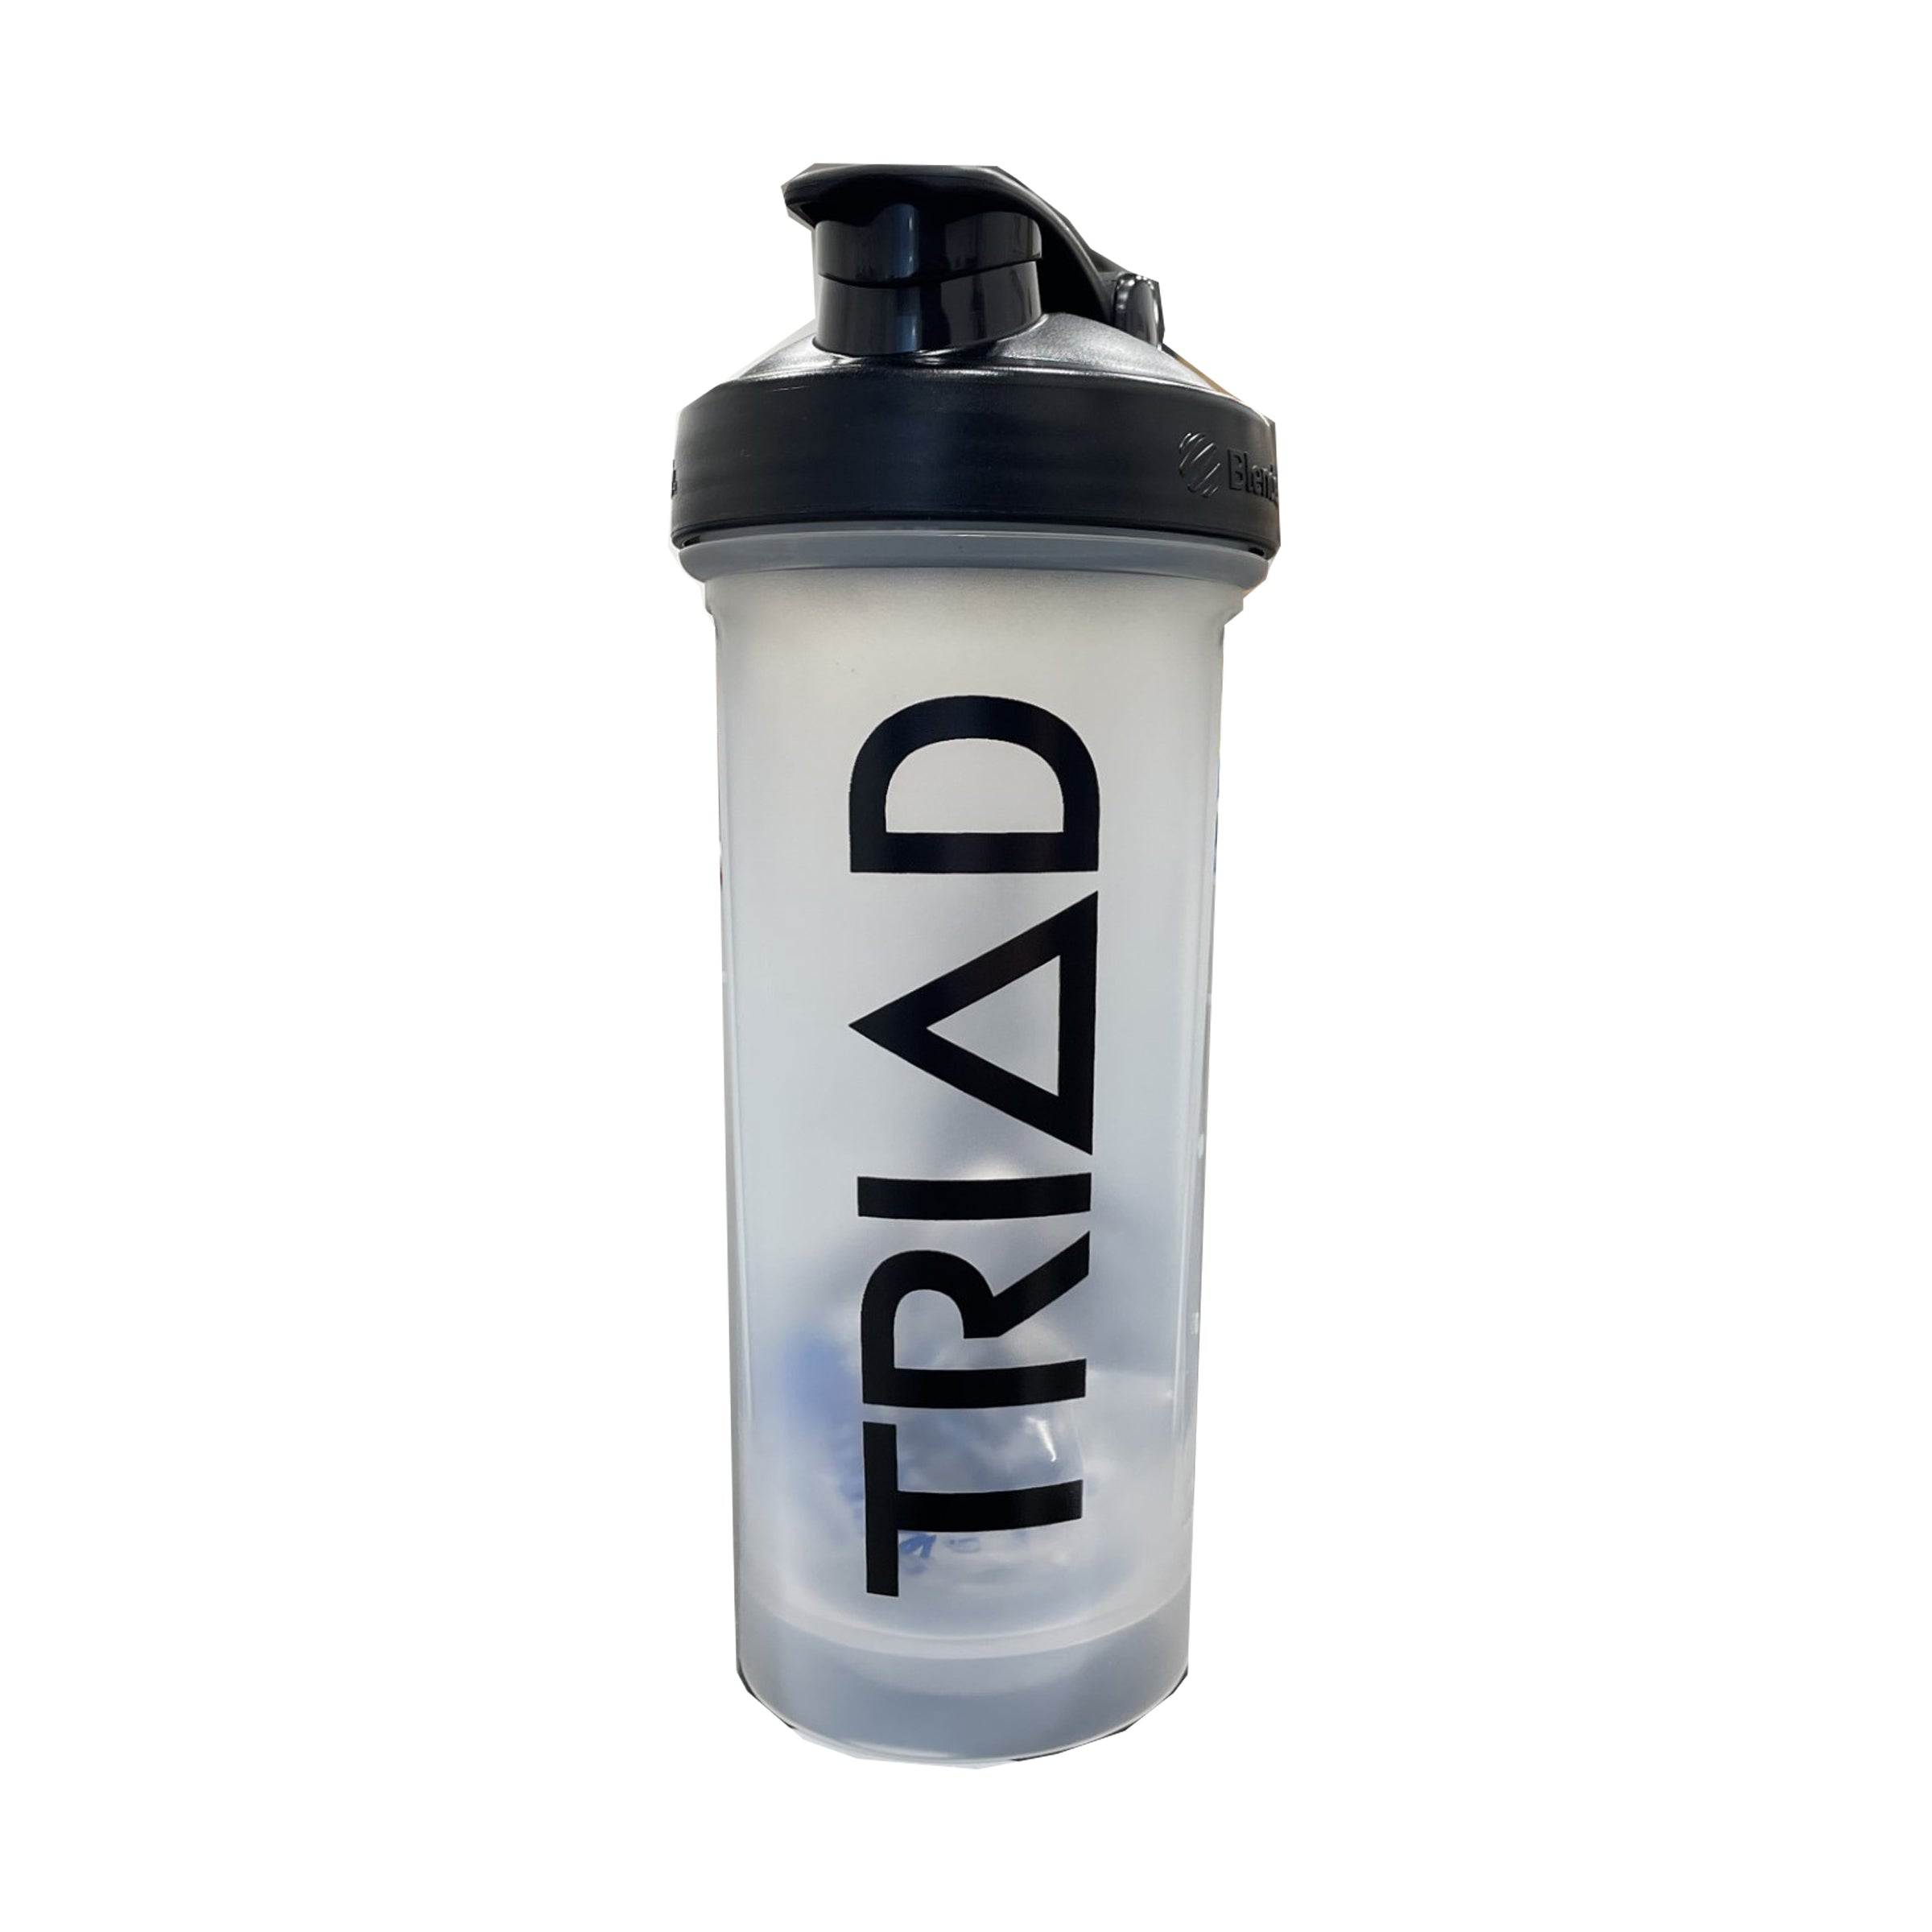 Blue Shield TRIAD Blender Bottle – Triad FSN